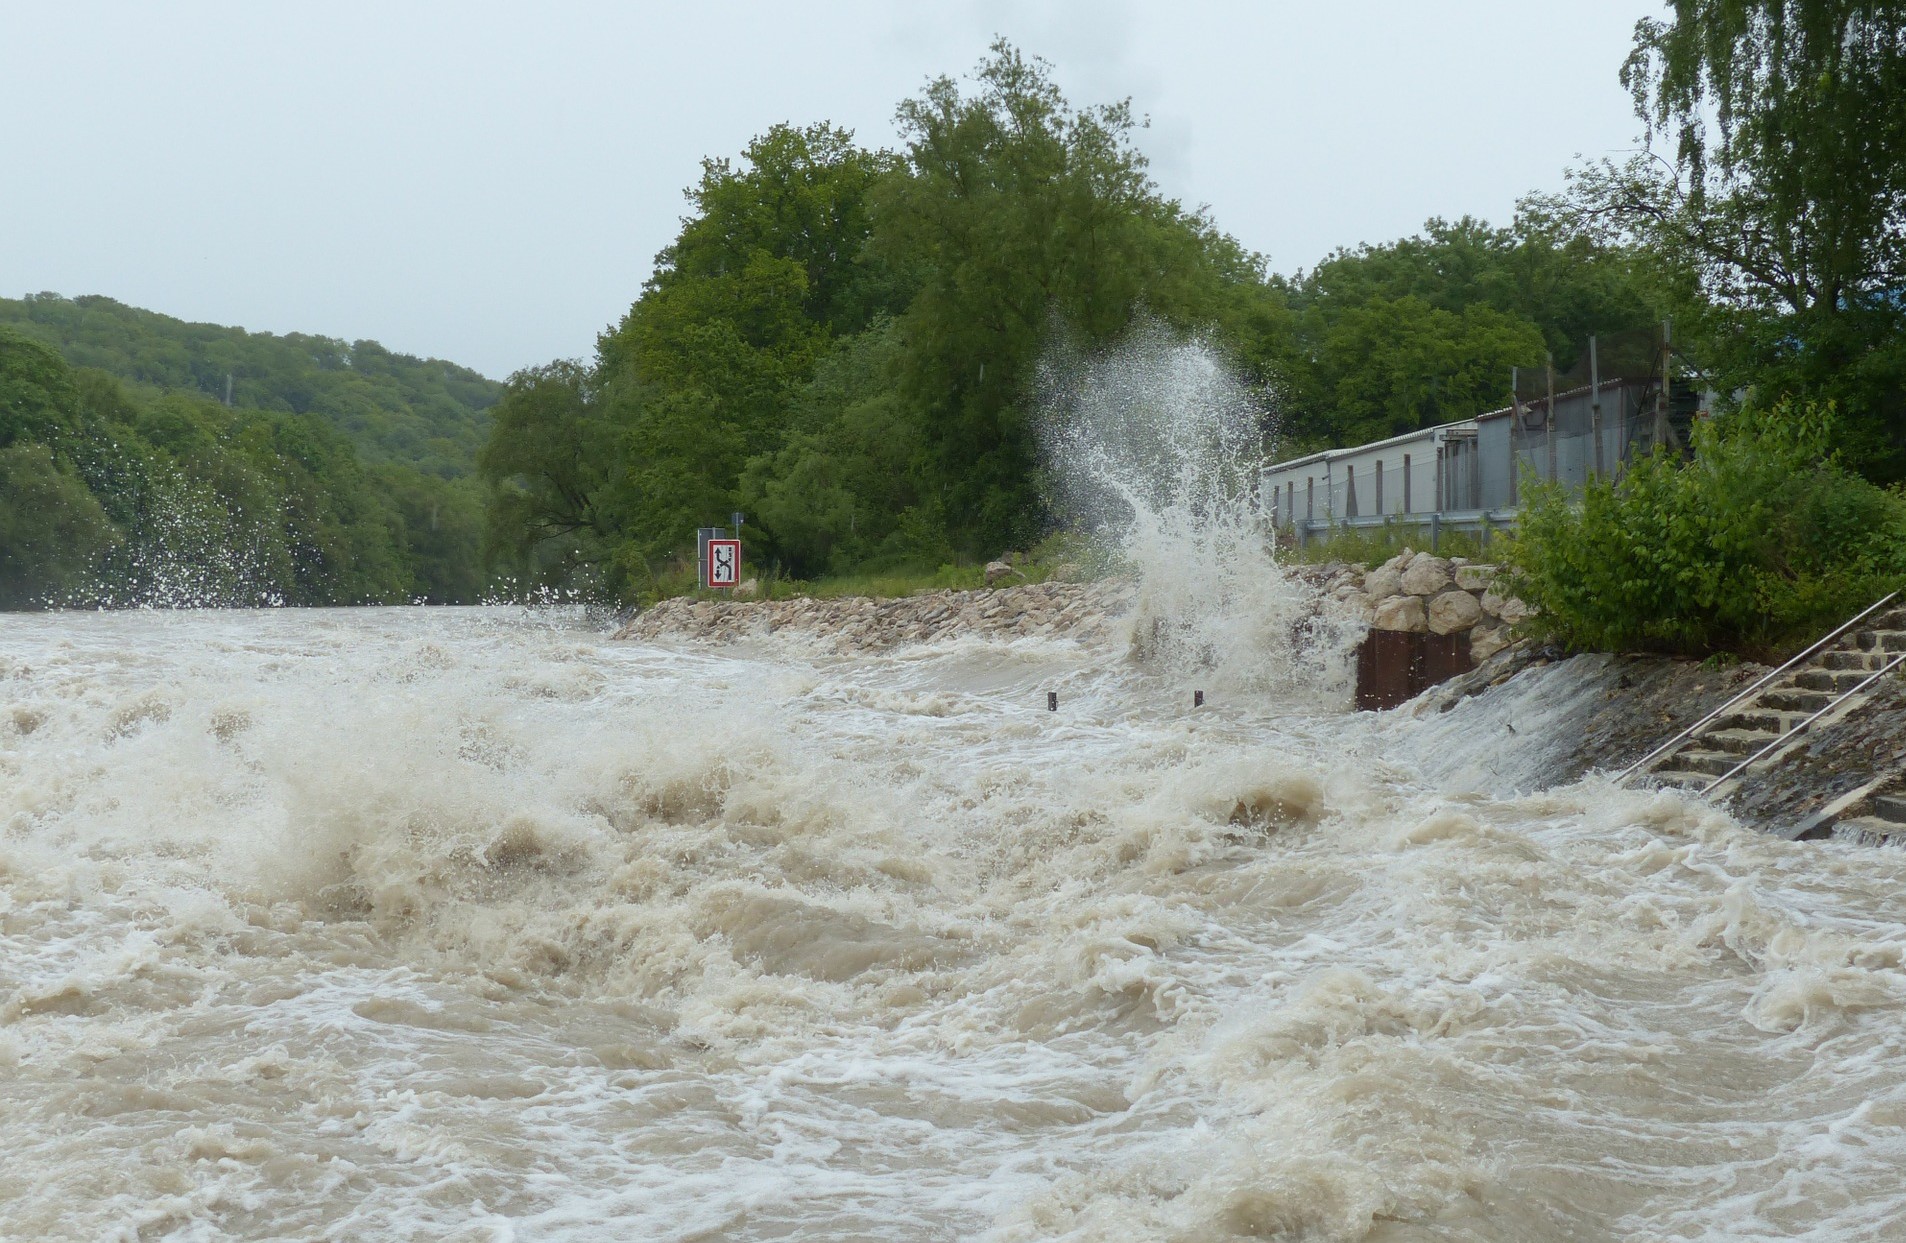 COD GALBEN de inundații pe râurile din Cluj/ Foto: Facebook - Institutul Național de Hidrologie și Gospodărie a Apelor